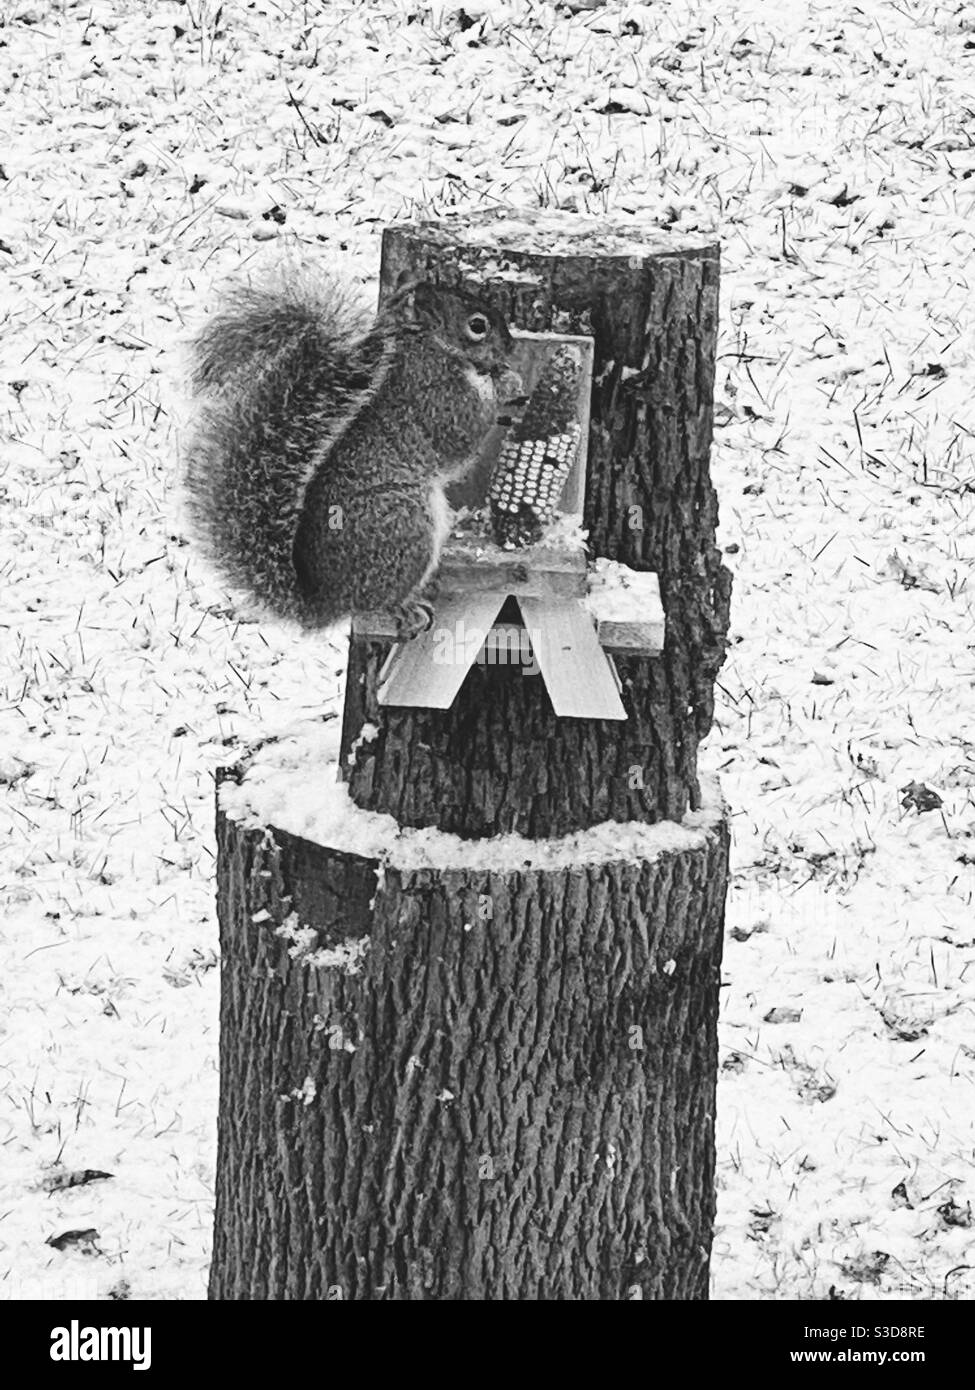 Eichhörnchen sitzt auf Eichhörnchen Bank essen Mais Stockfoto